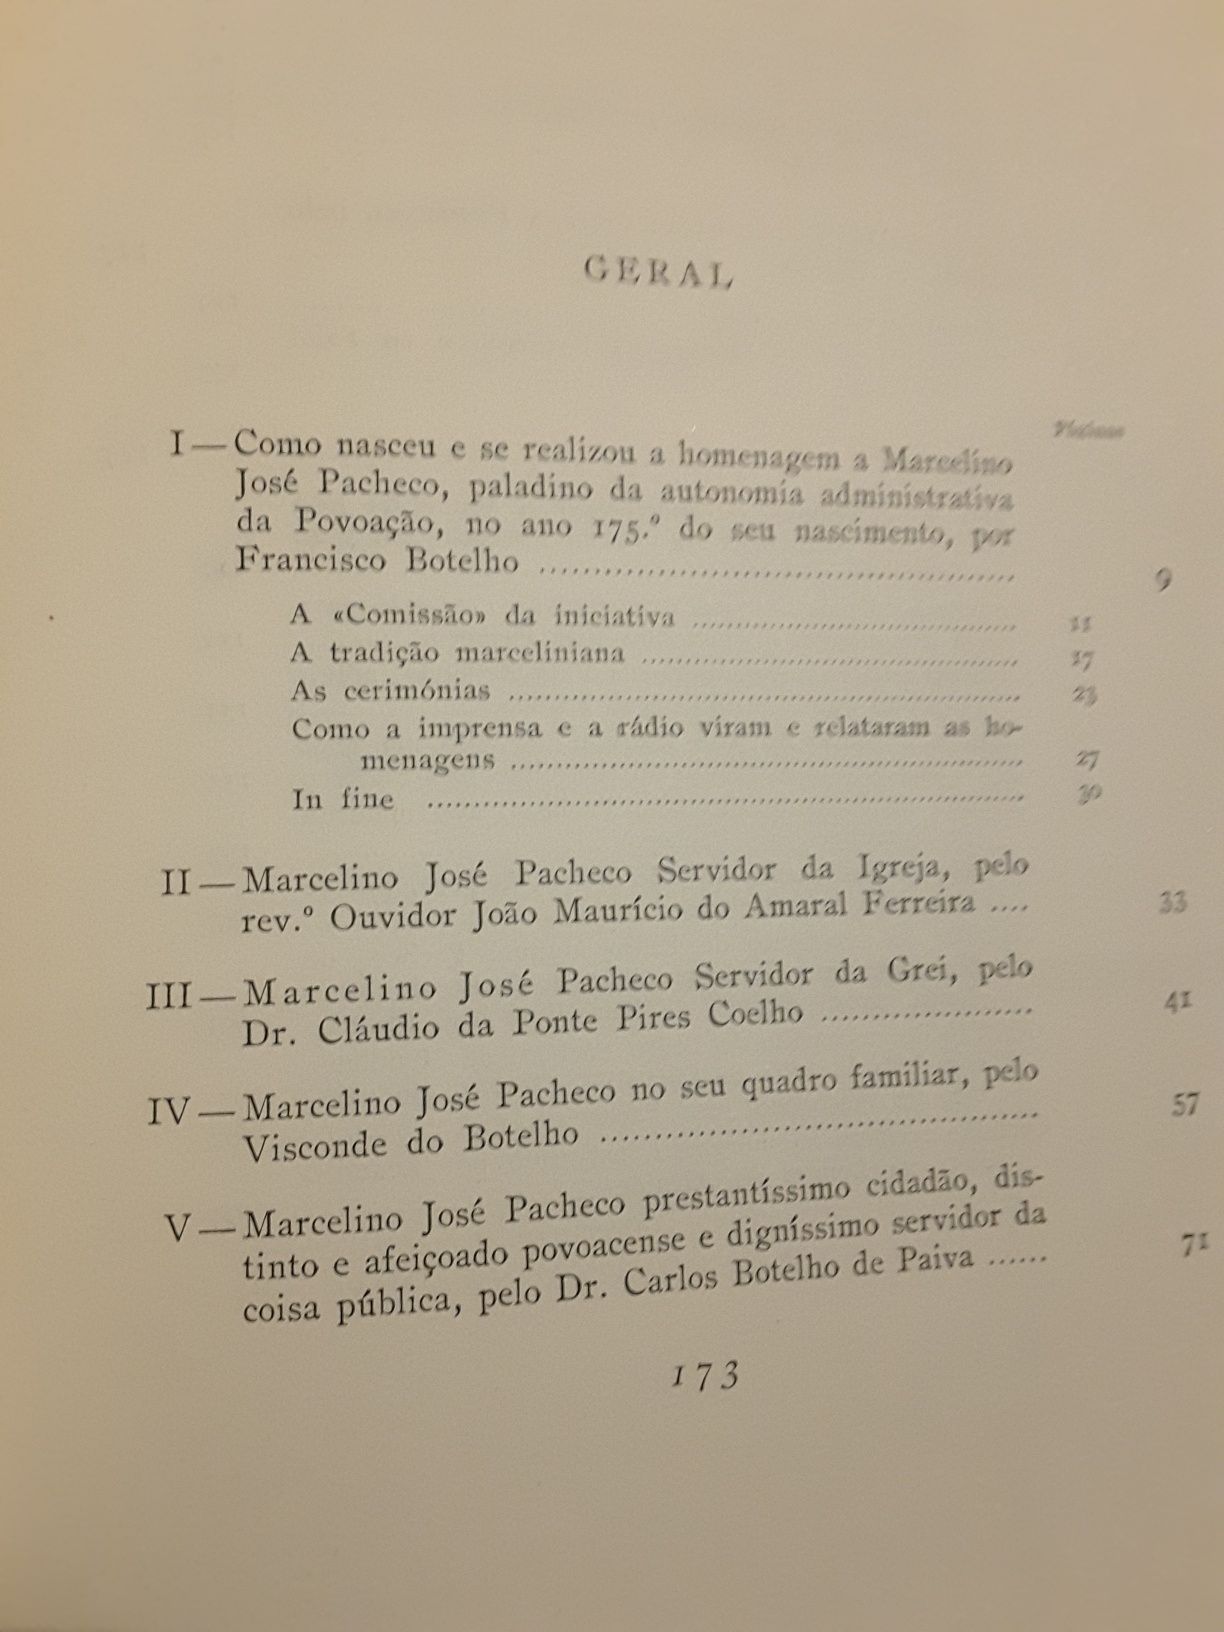 Açores. Autonomia da Povoação / Casteição (Meda)